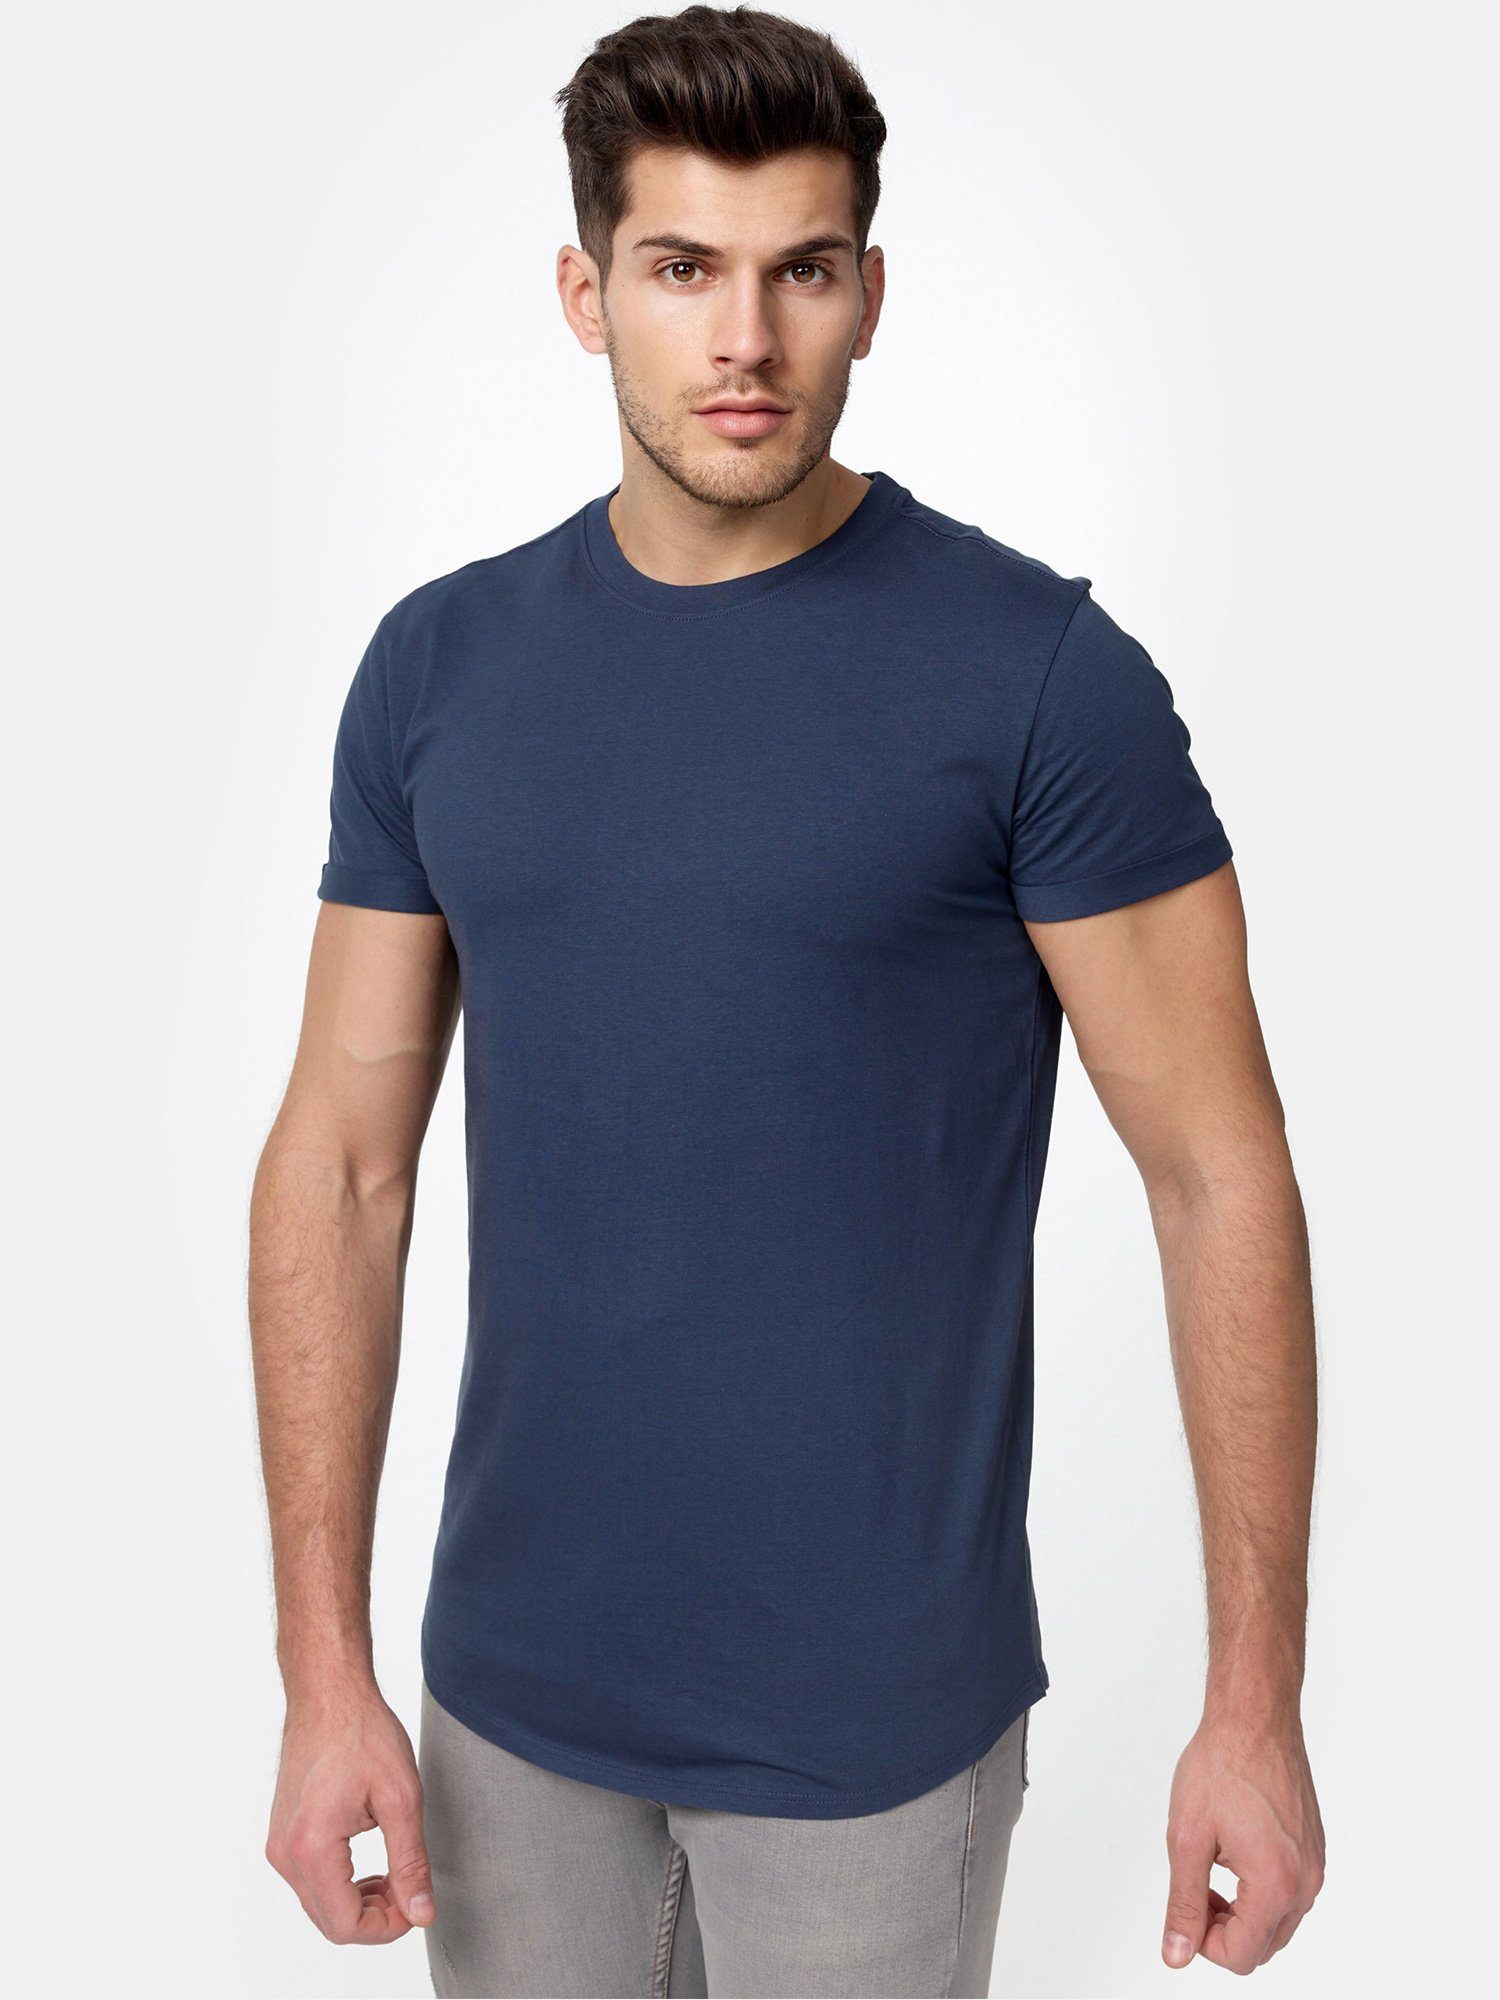 Tazzio E105 navy T-Shirt Herren Rundhalsshirt Basic